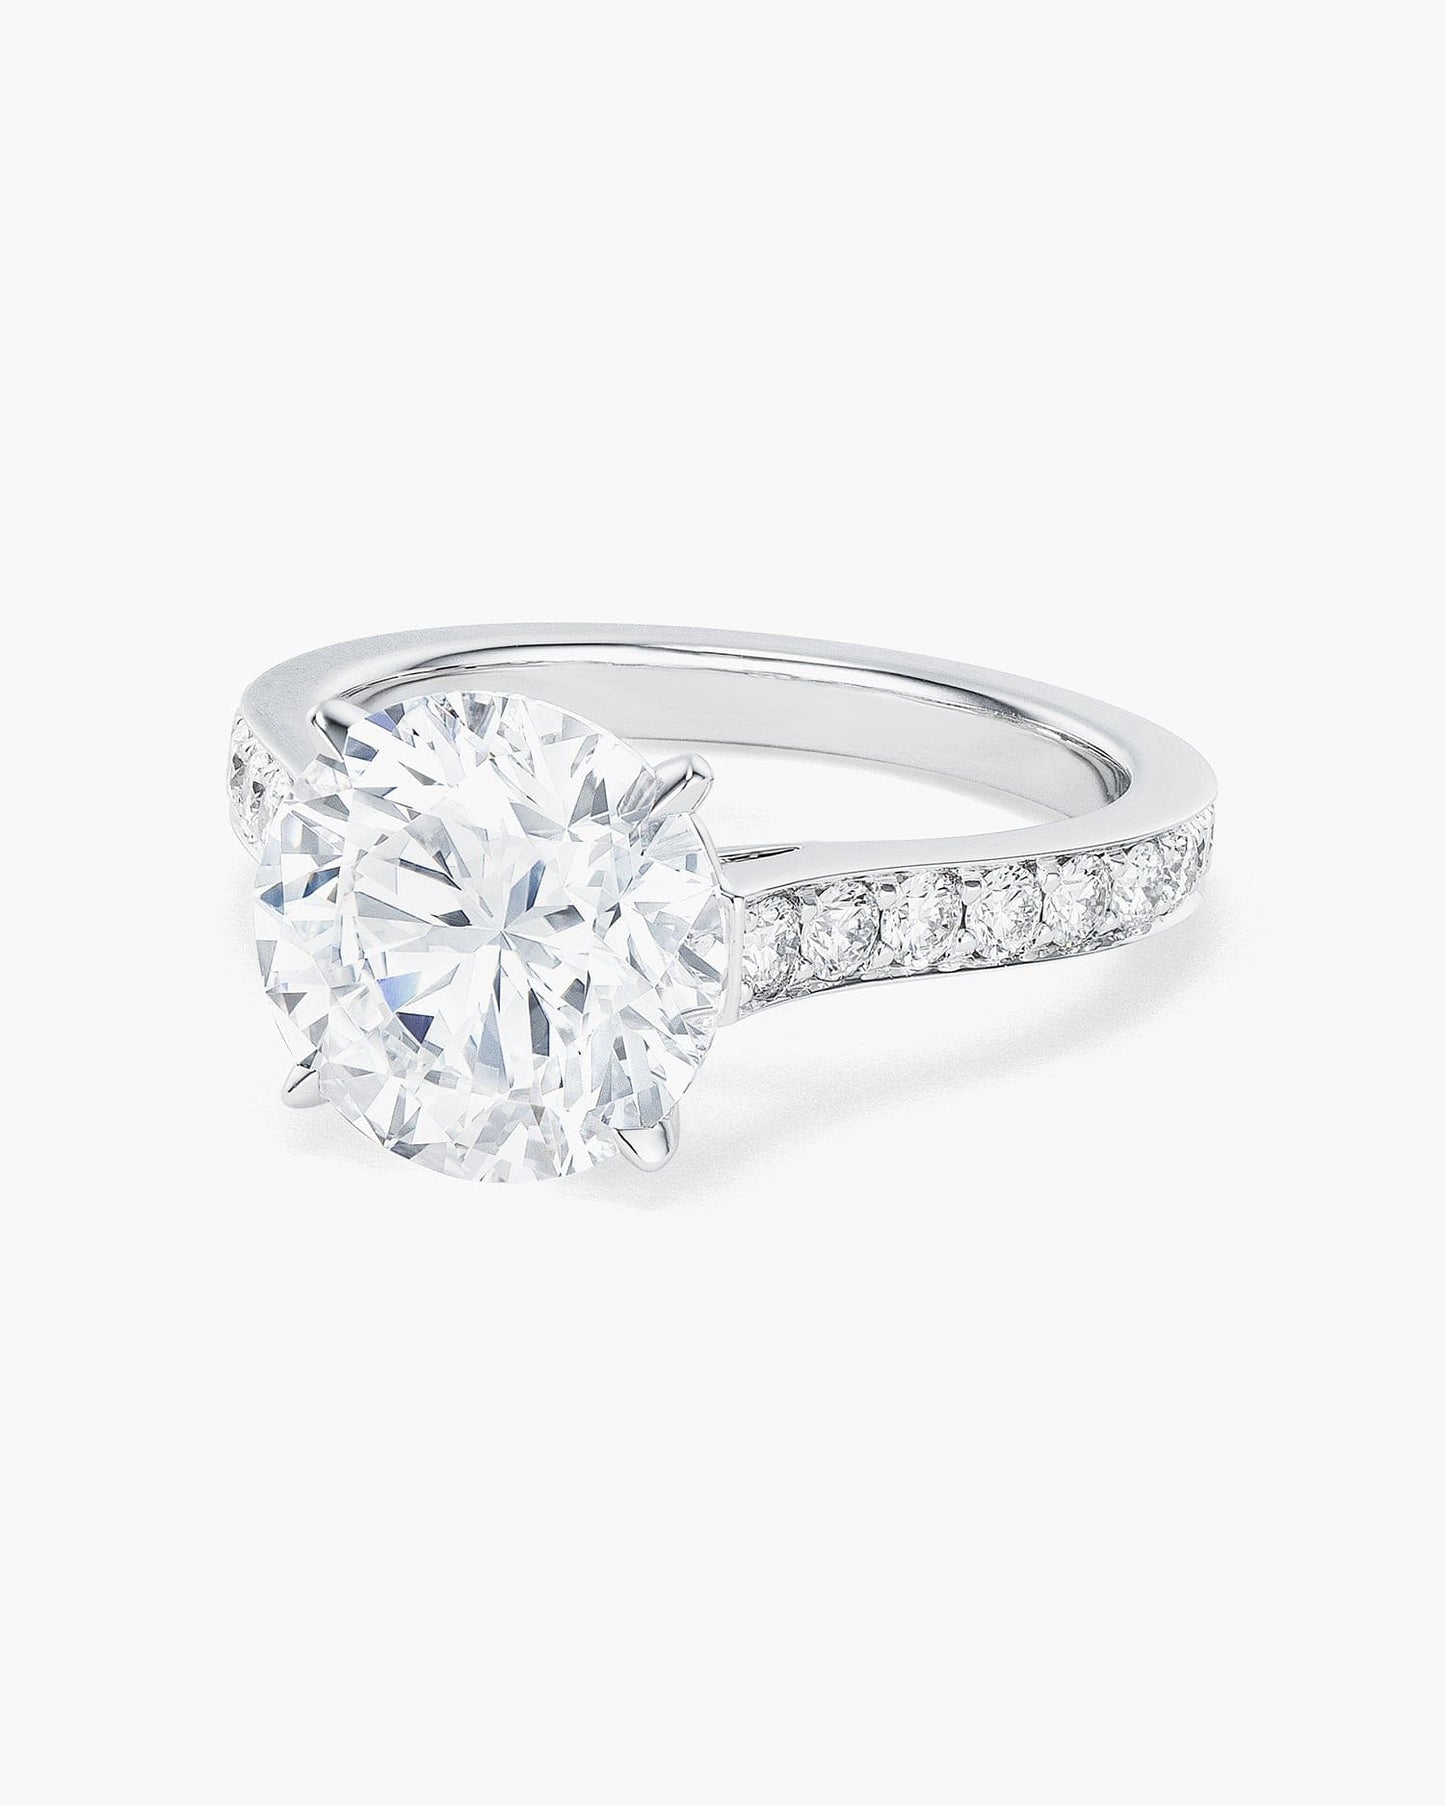 3.62 carat Round Brilliant Cut Diamond Ring